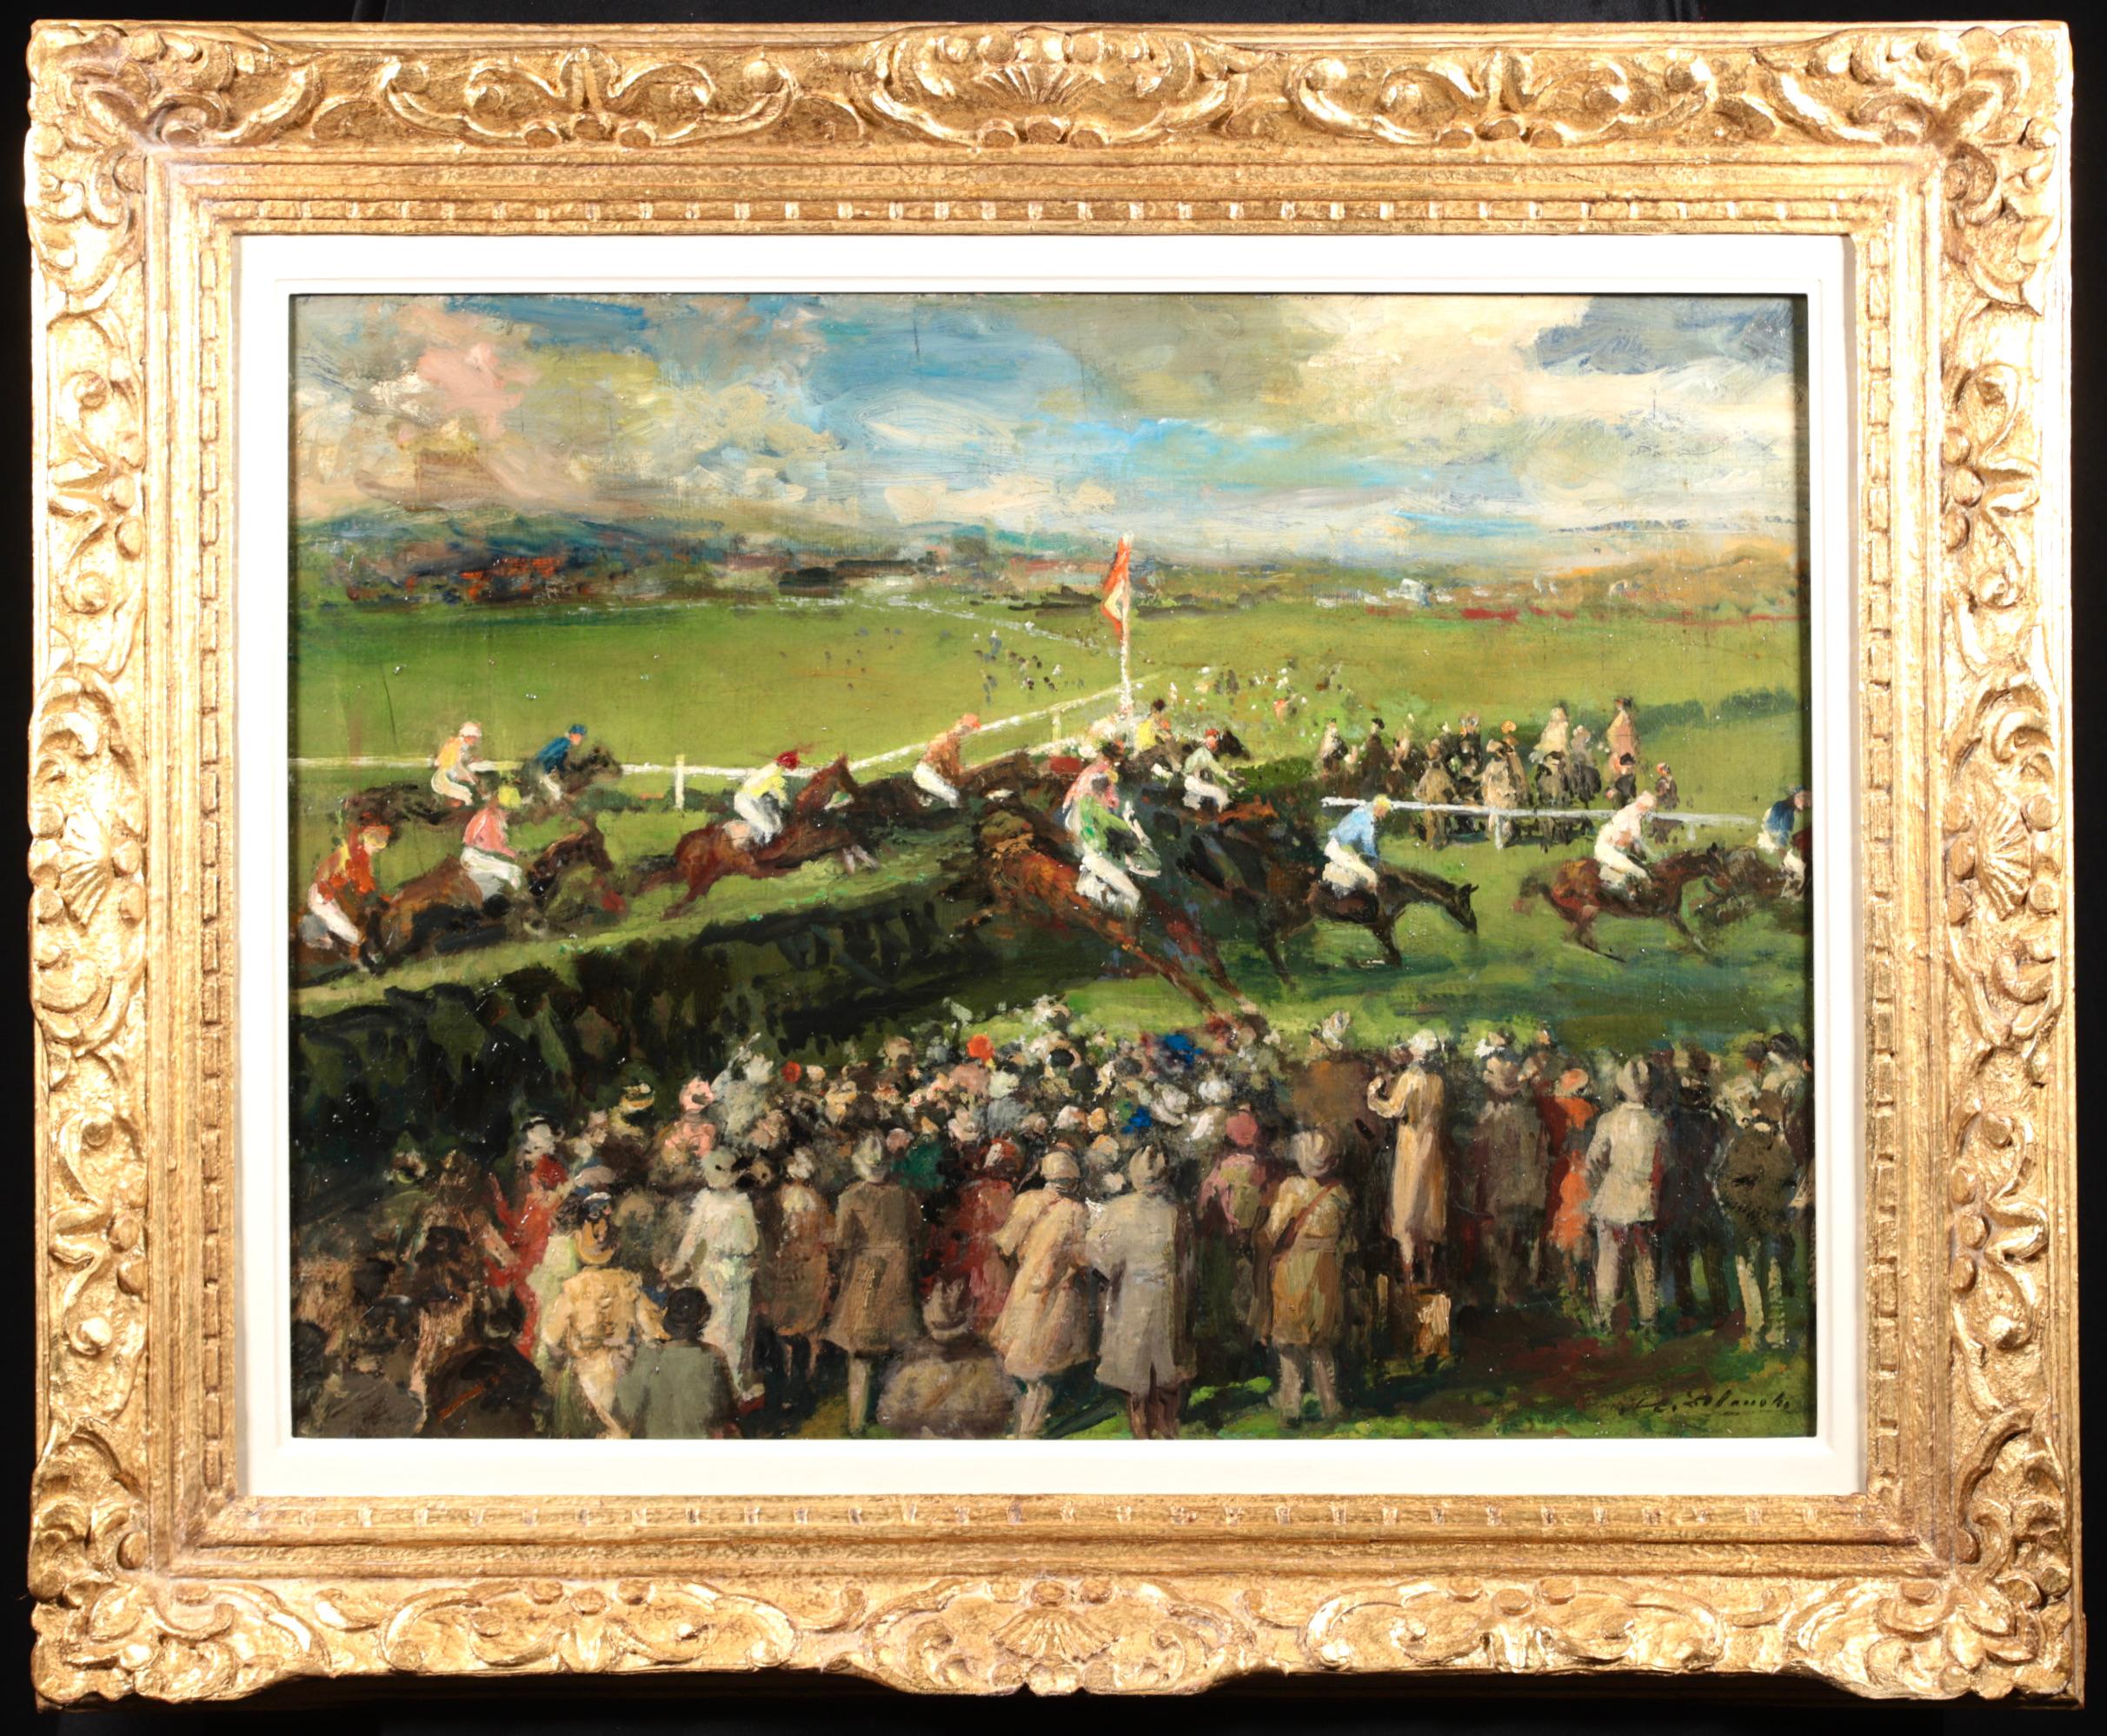 Animal Painting Jacques Emile Blanche - Peinture à l'huile « At the Races » (Les chevaux et les personnages post-impressionnistes) de Jacques-Emile Blanche